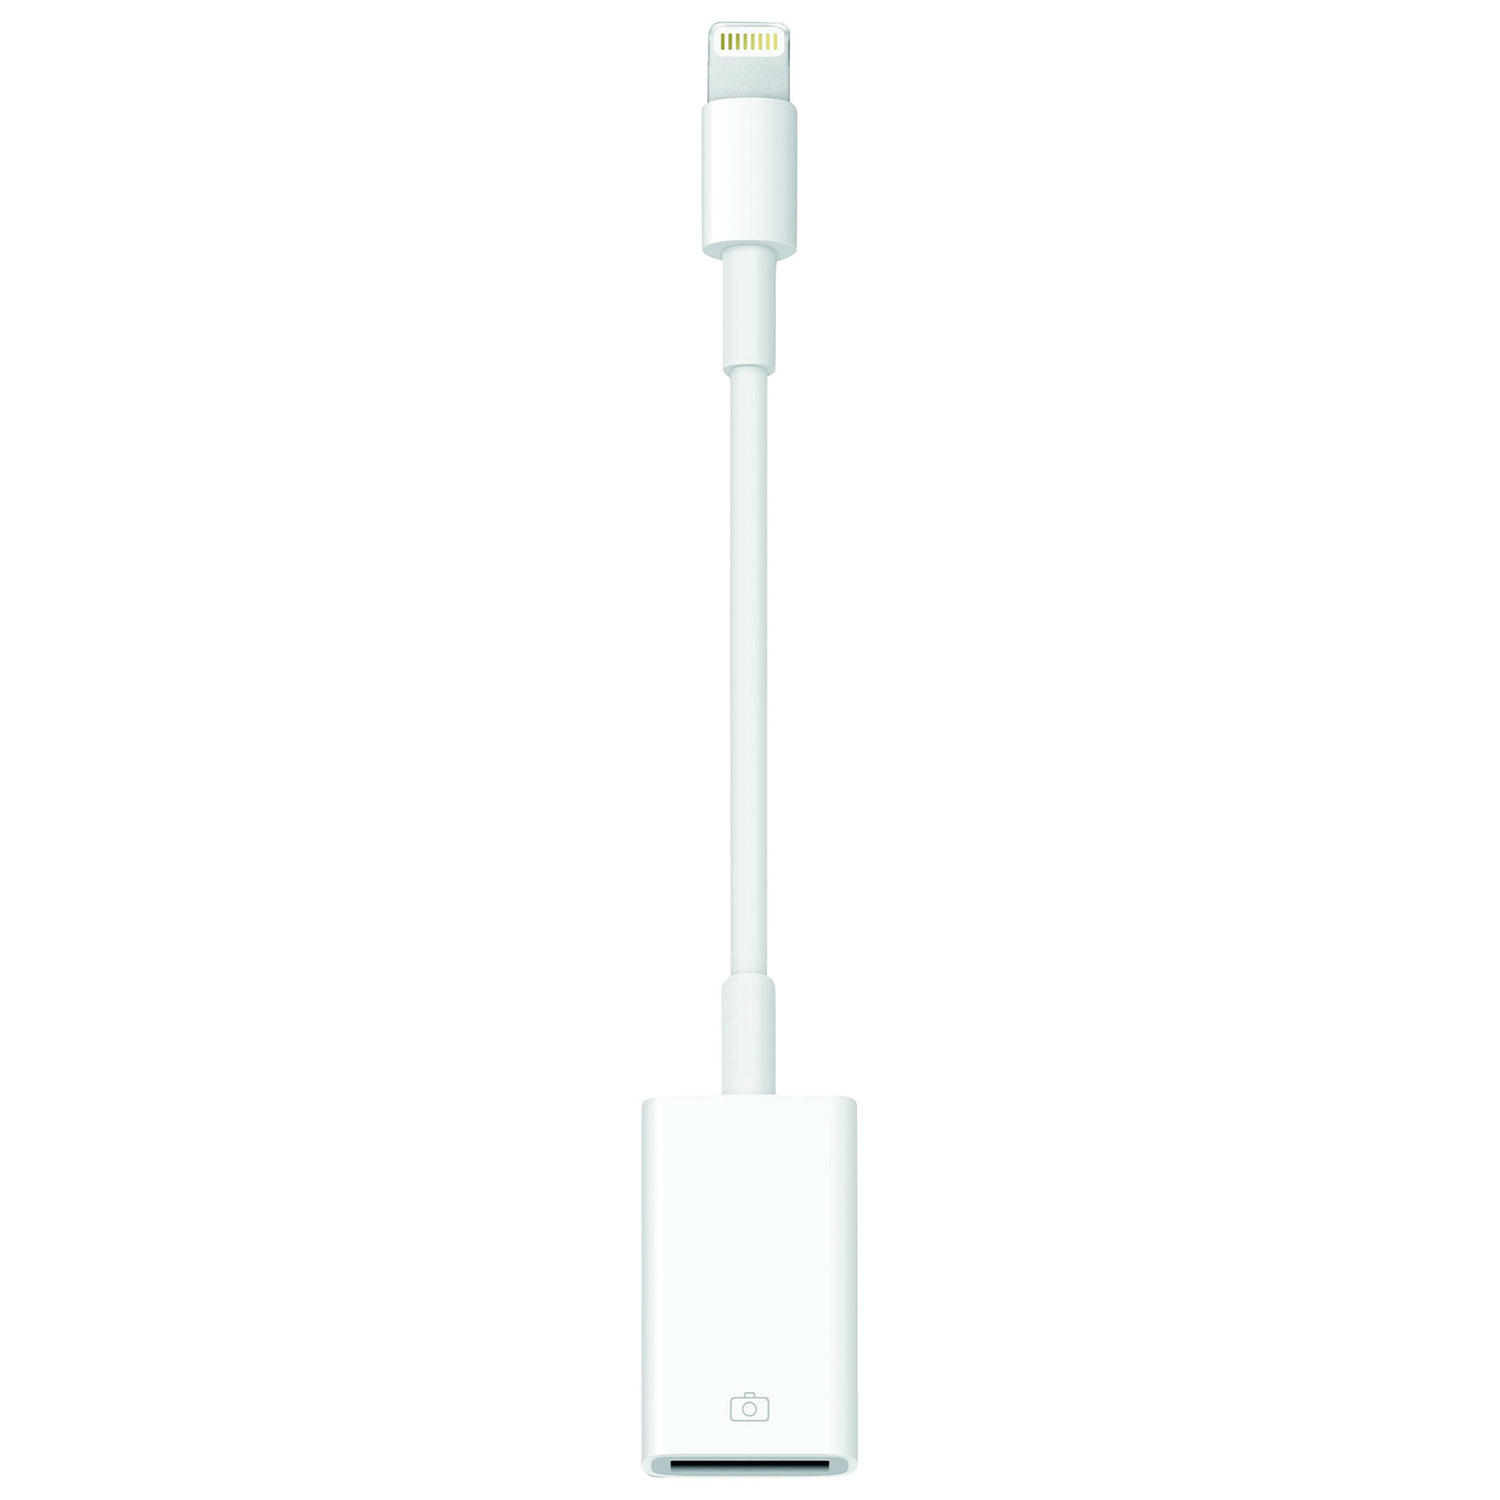 Wahbite Adaptateur Apple Lightning vers USB pour appareil photo